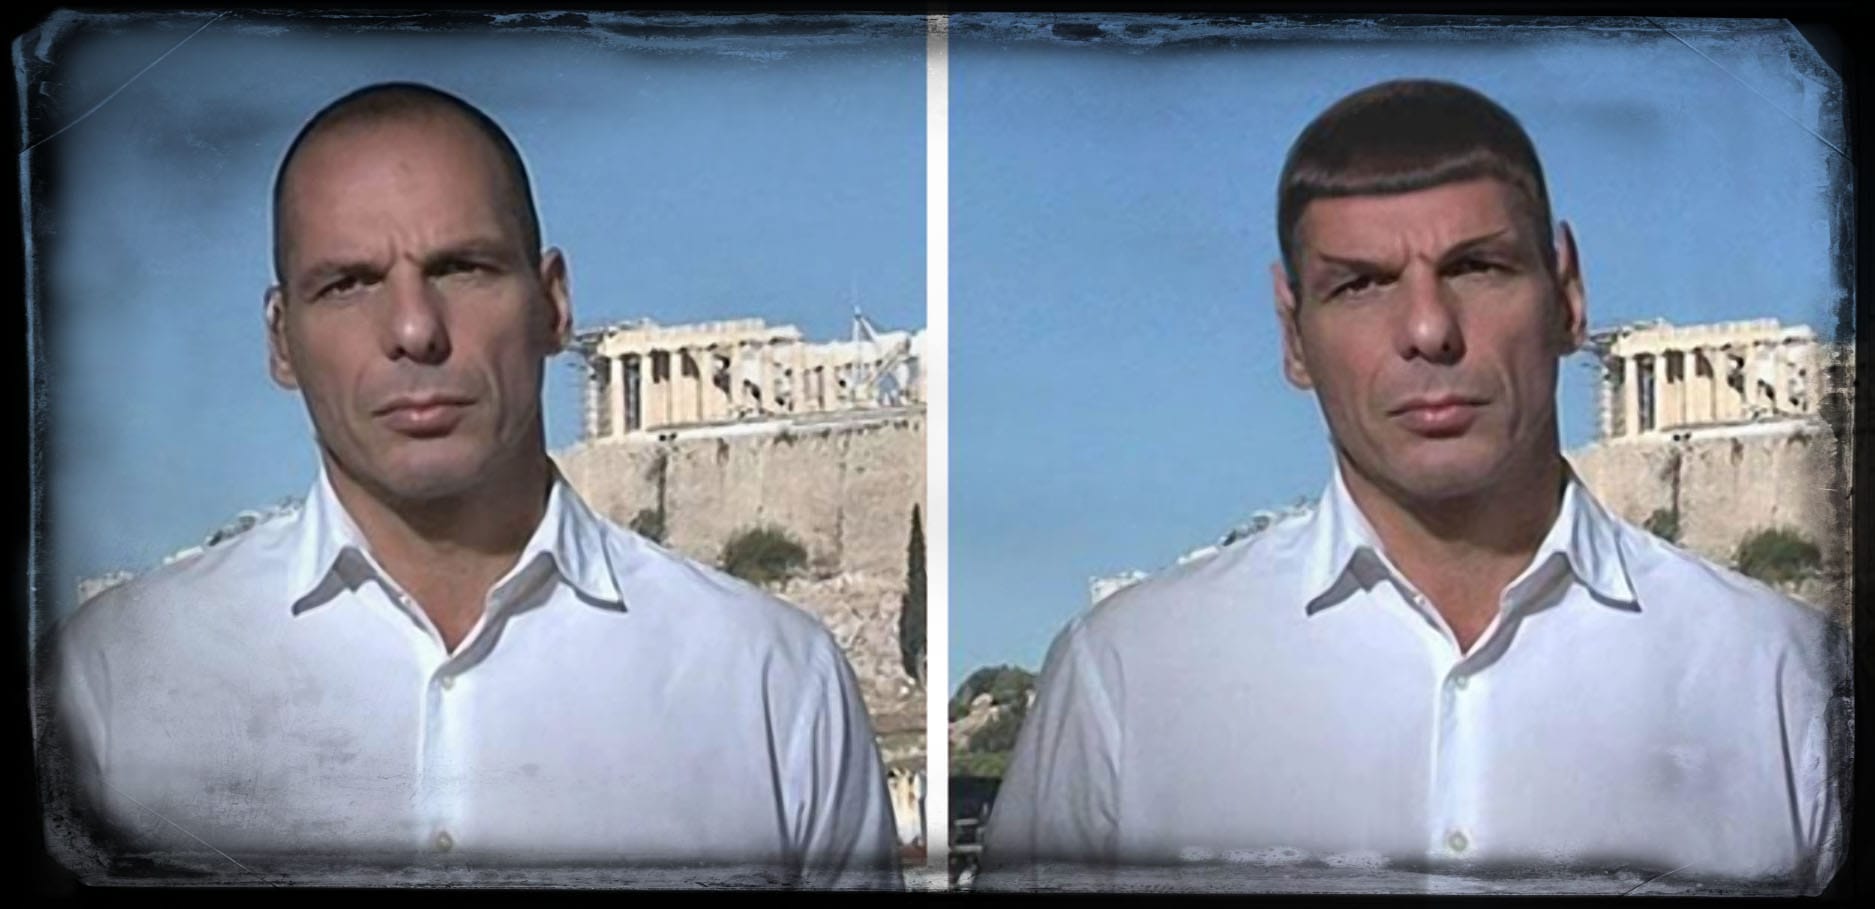 Yanis-Varoufakis-Spock griechenland finanzminister endloesung eurokrise euroausstieg waehrung geld streit sozialstaat enterprise spaceship